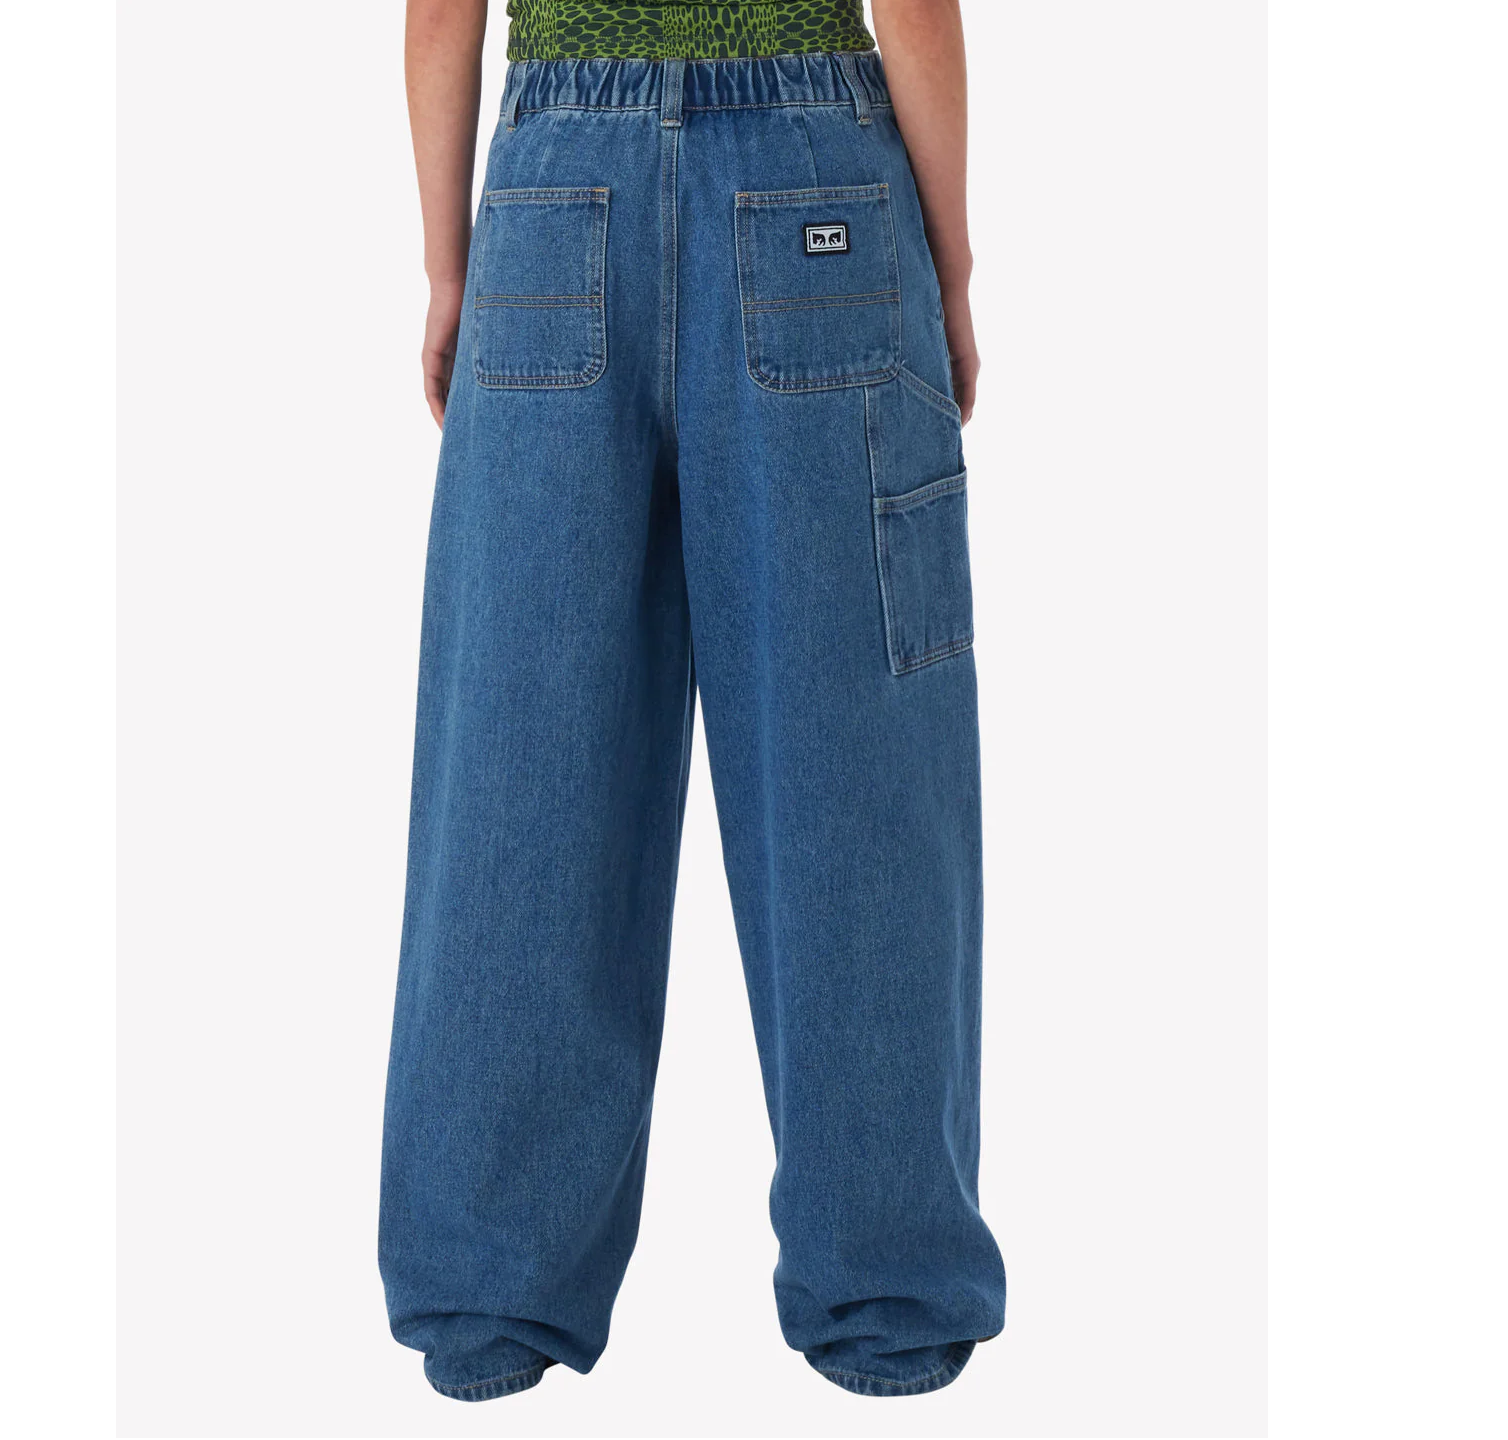 Obey pantalone jeans da donna
Carpenter Lily 242010052 blu chiaro